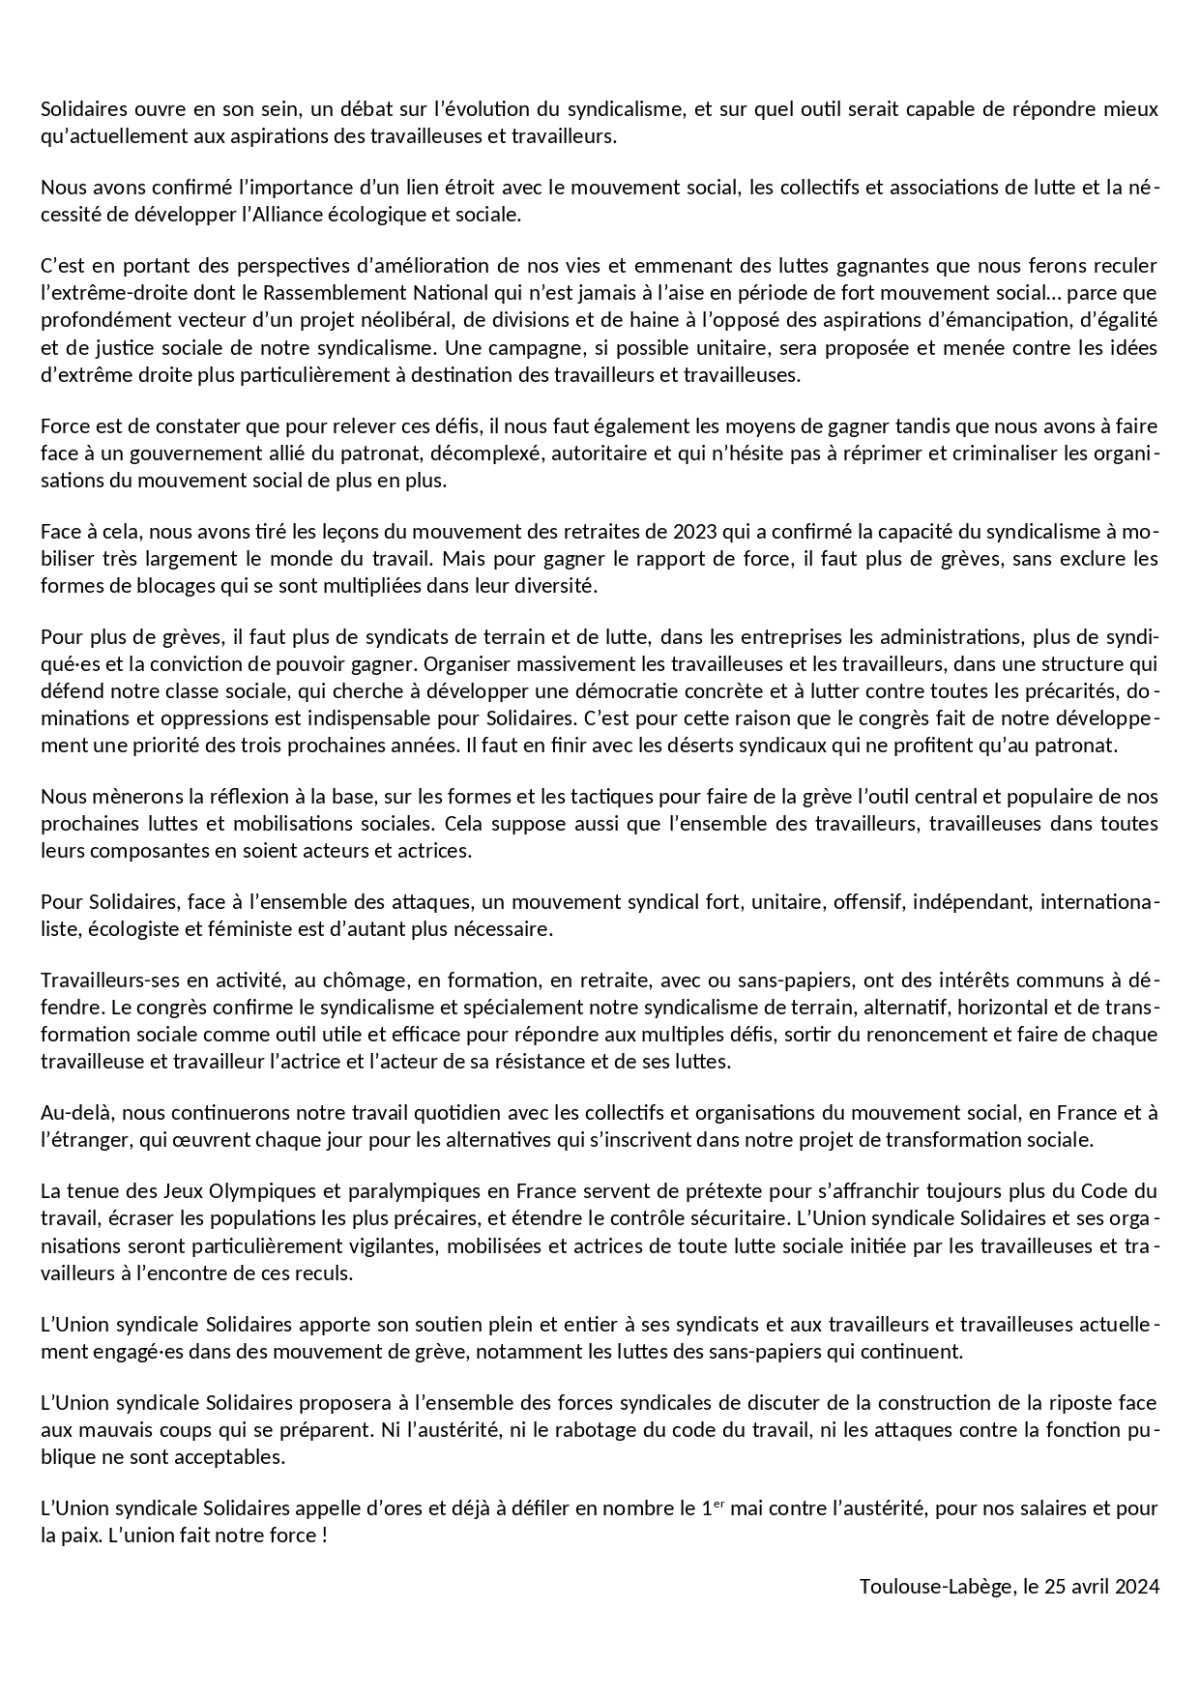 Déclaration finale de l'Union Syndicale Solidaires en congrès le 25 avril 2024